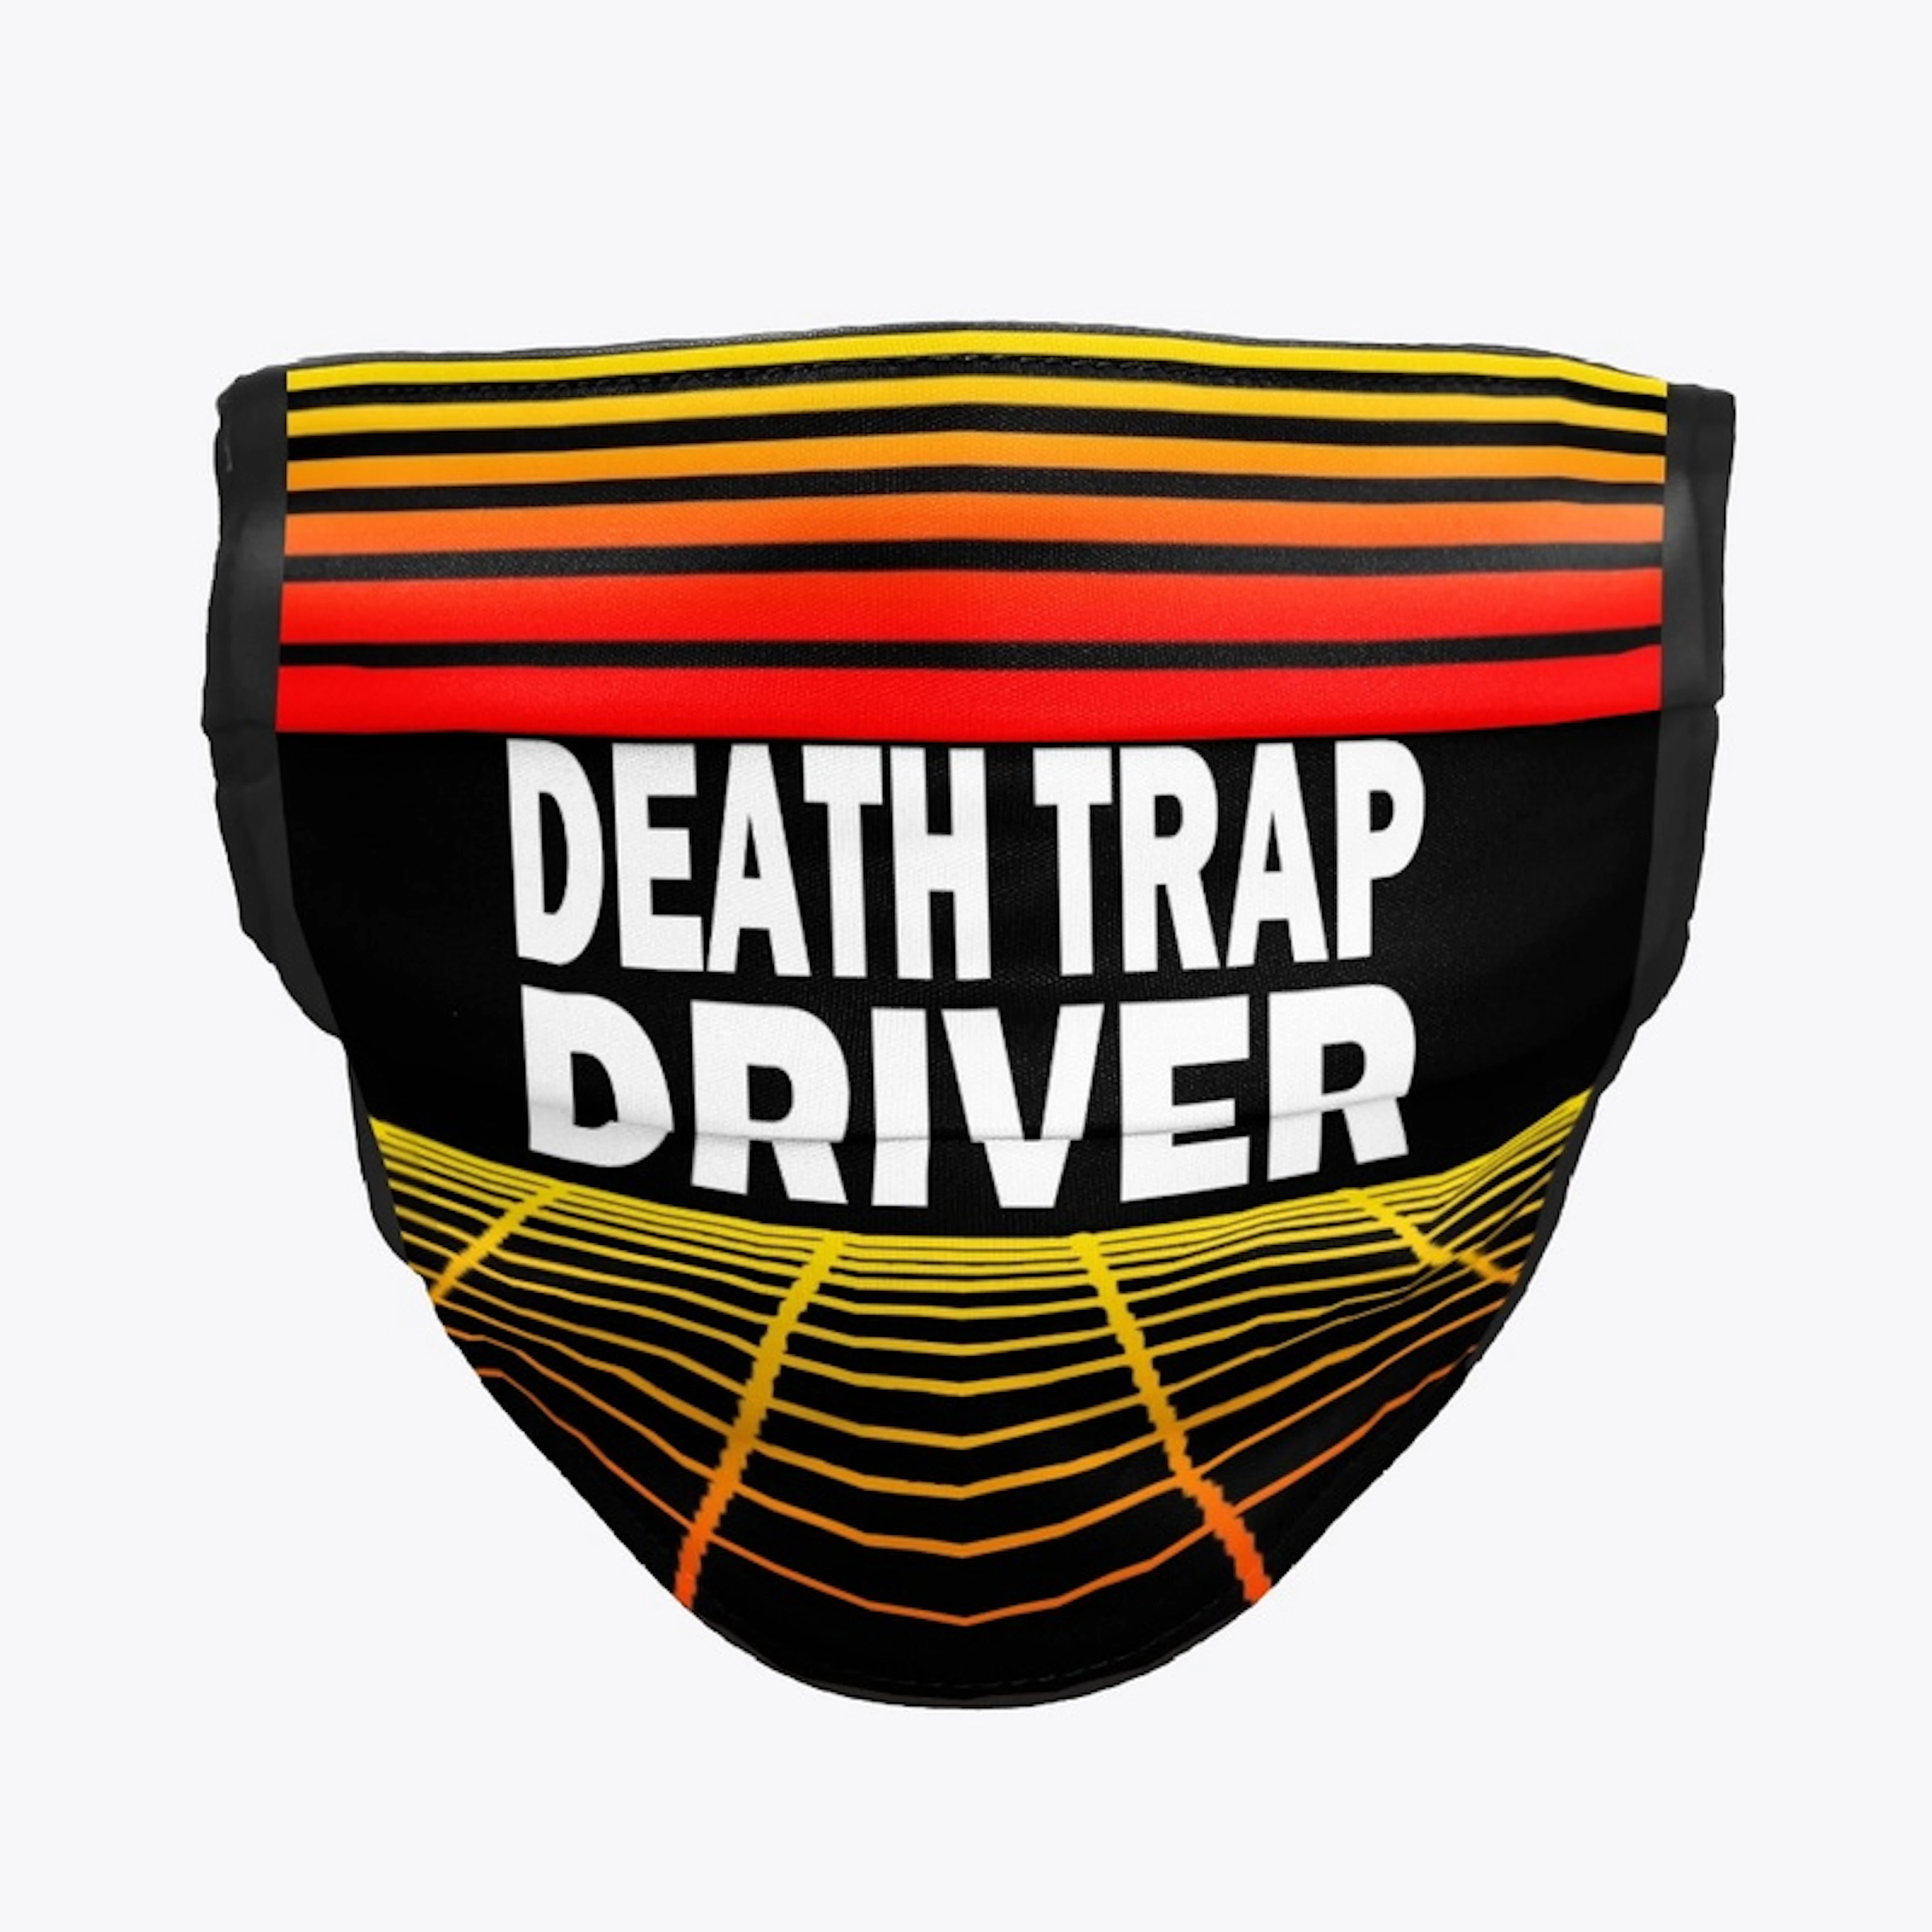 DEATH TRAP DRIVER - Retro Face Mask